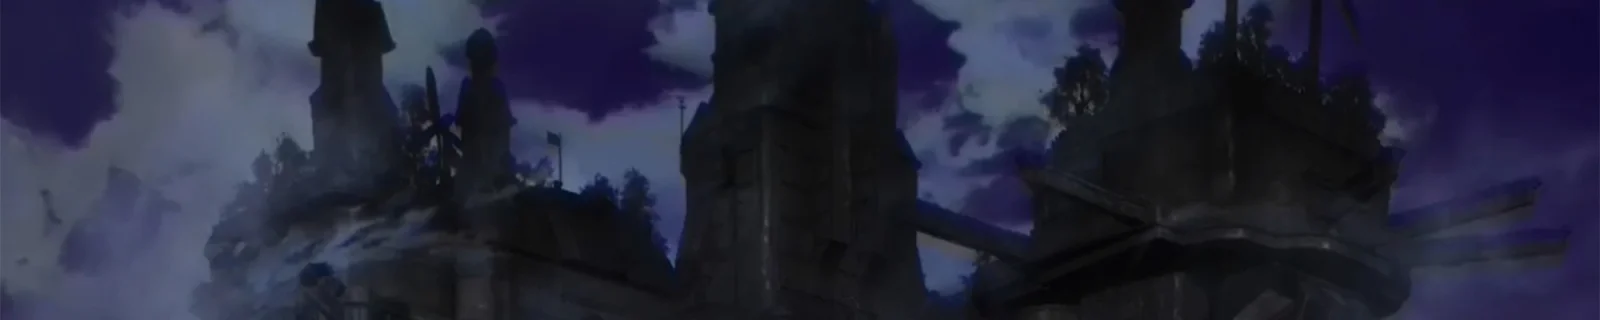 12月25日《重力眩晕2》特别动画正式播出